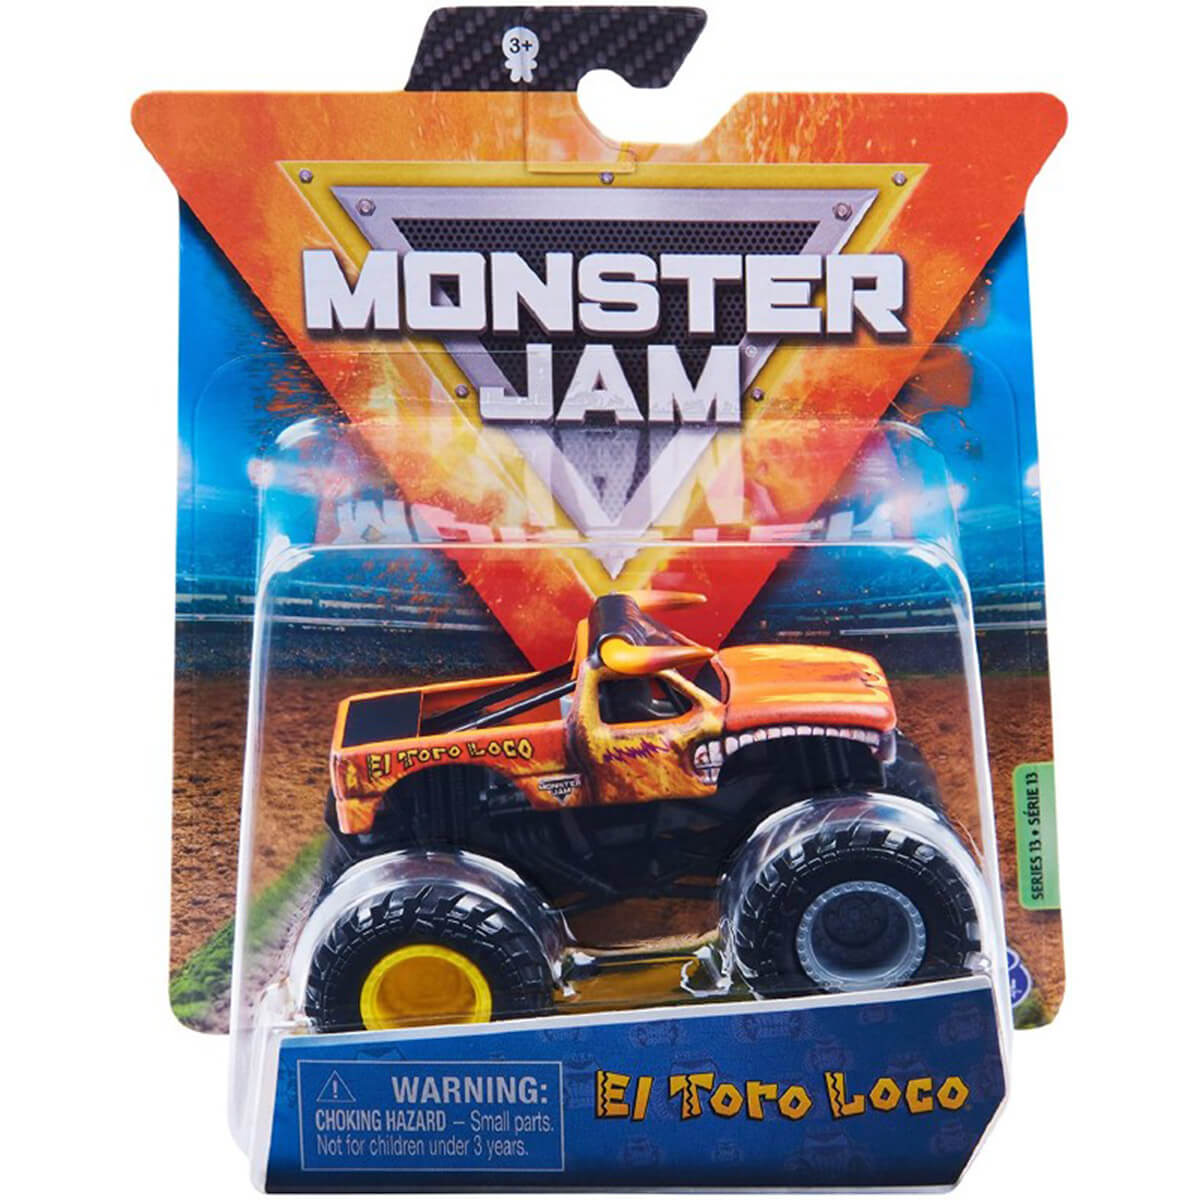 Monster Jam True Metal El Toro Loco 1:64 Scale Vehicle